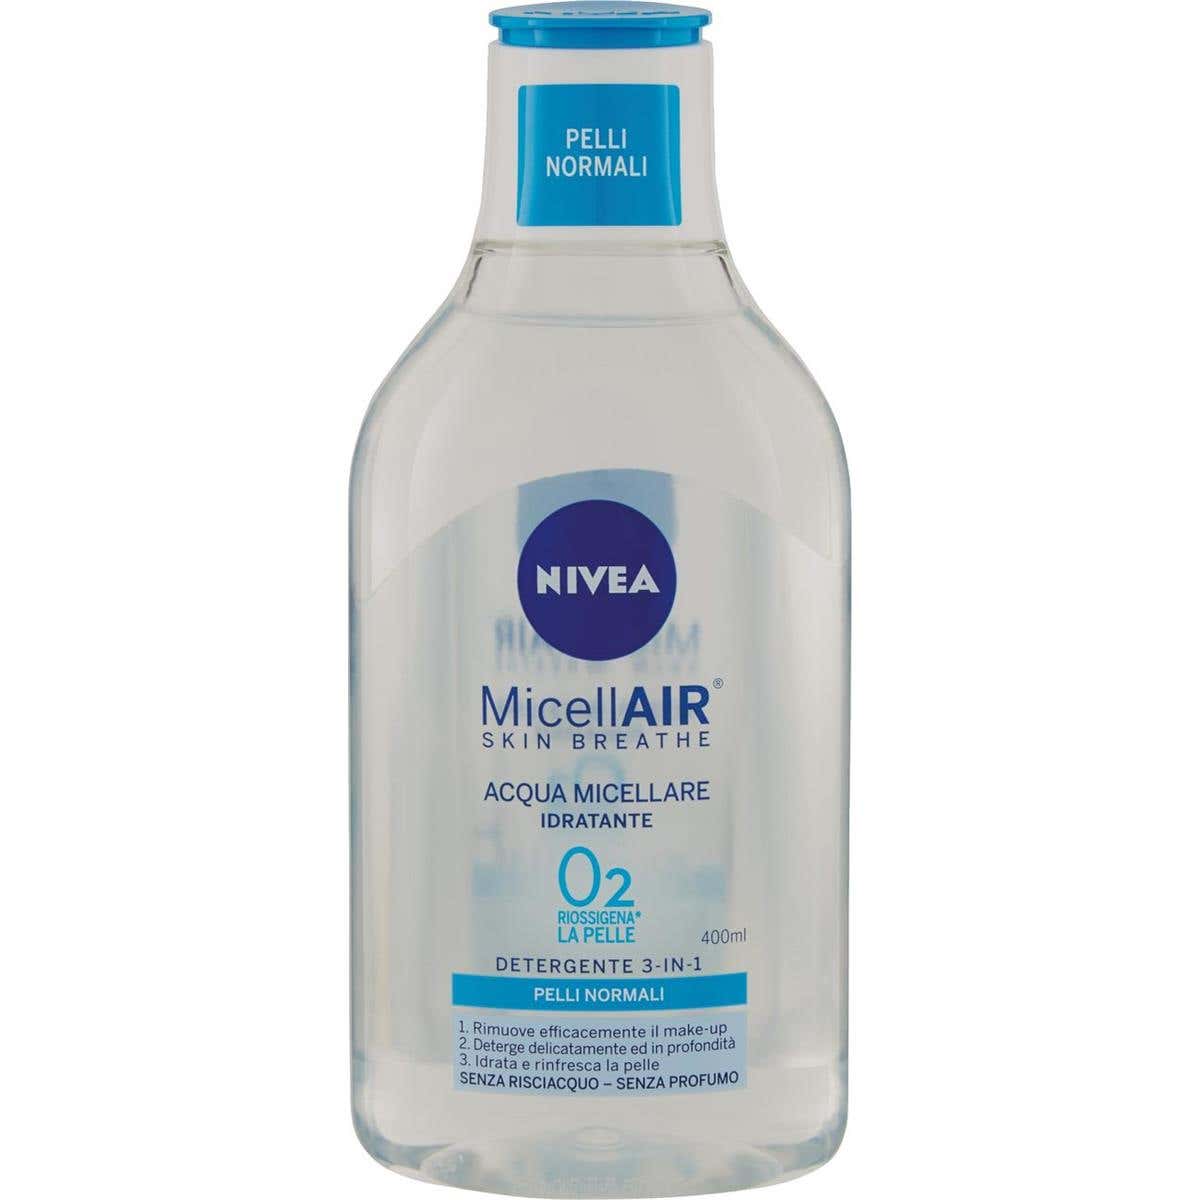 NIVEA Nivea MicellAir Skin Breathe Acqua Micellare Idratante Detergente 3-in-1 400 ml